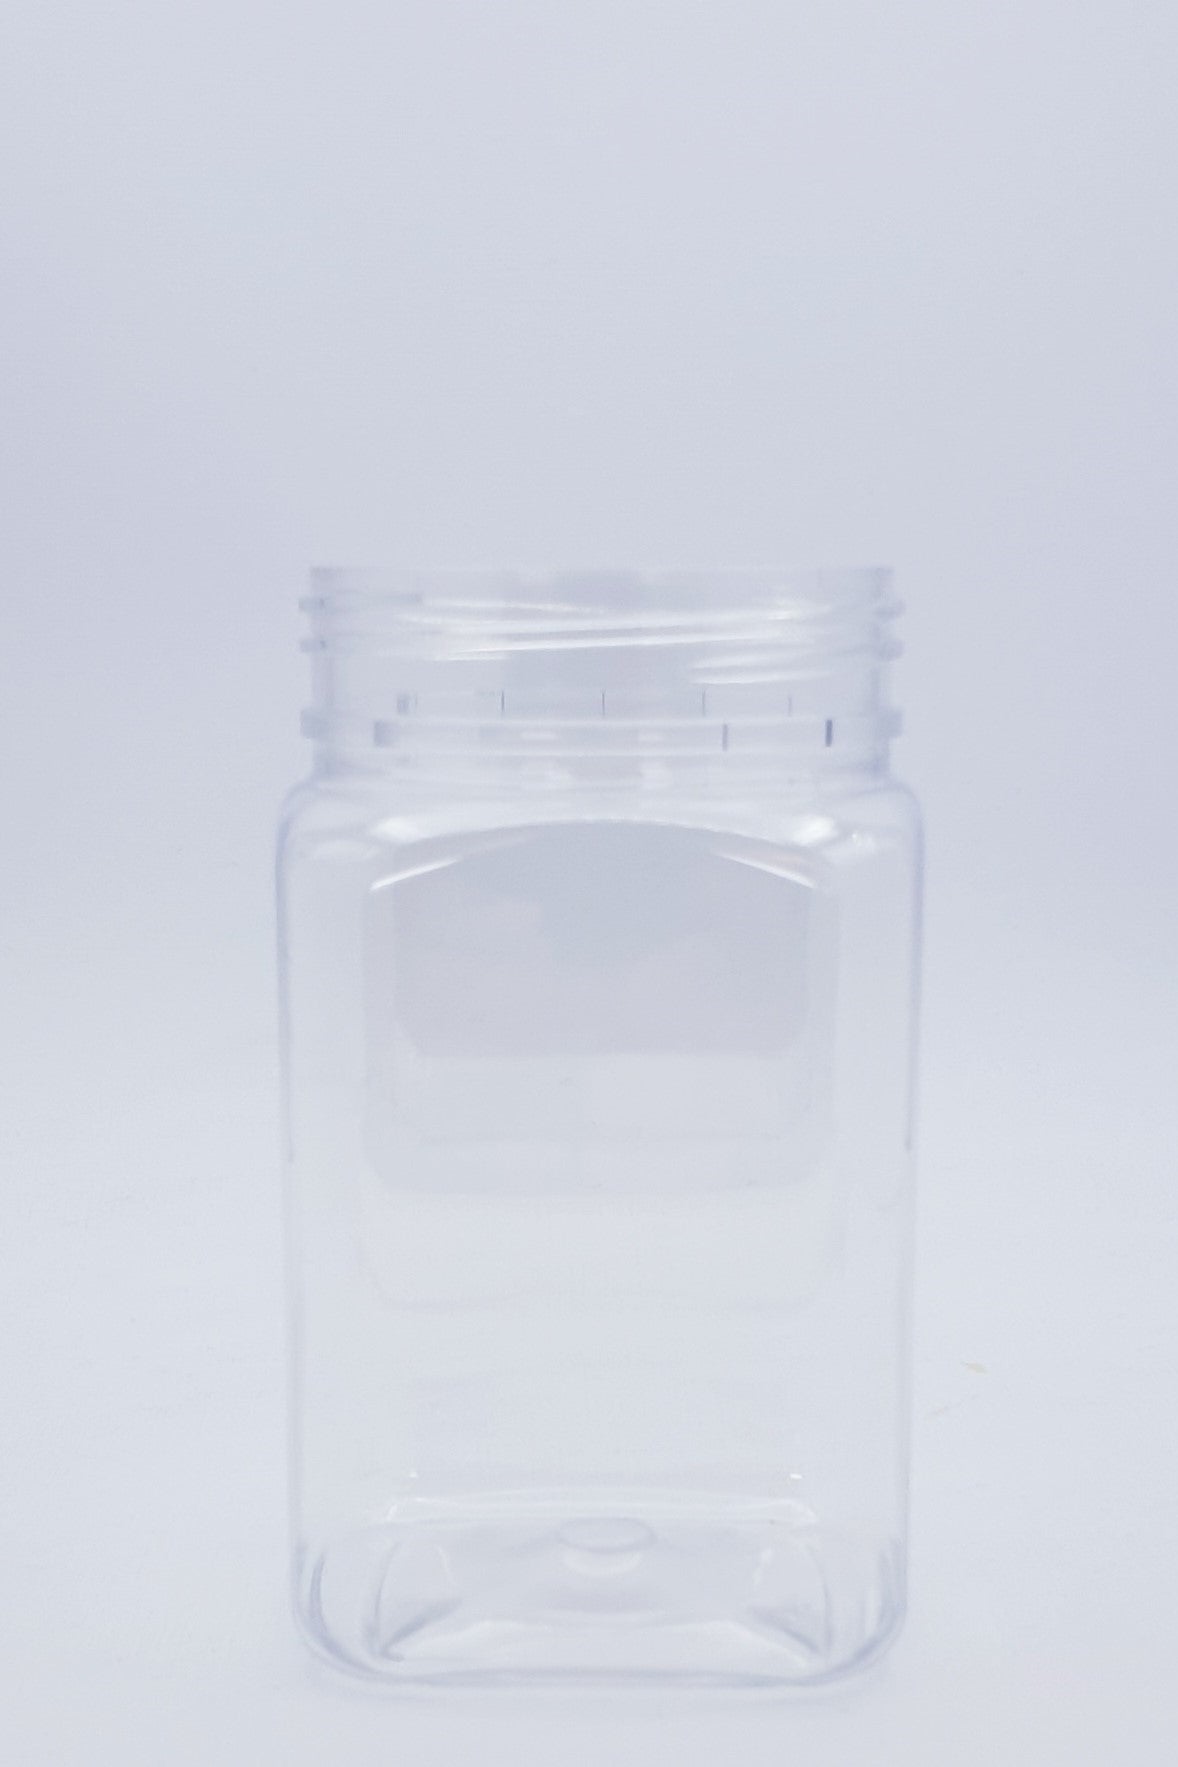 400ml Square Clear PET Jar W/Lid - 75 Jars and Lids Per Carton